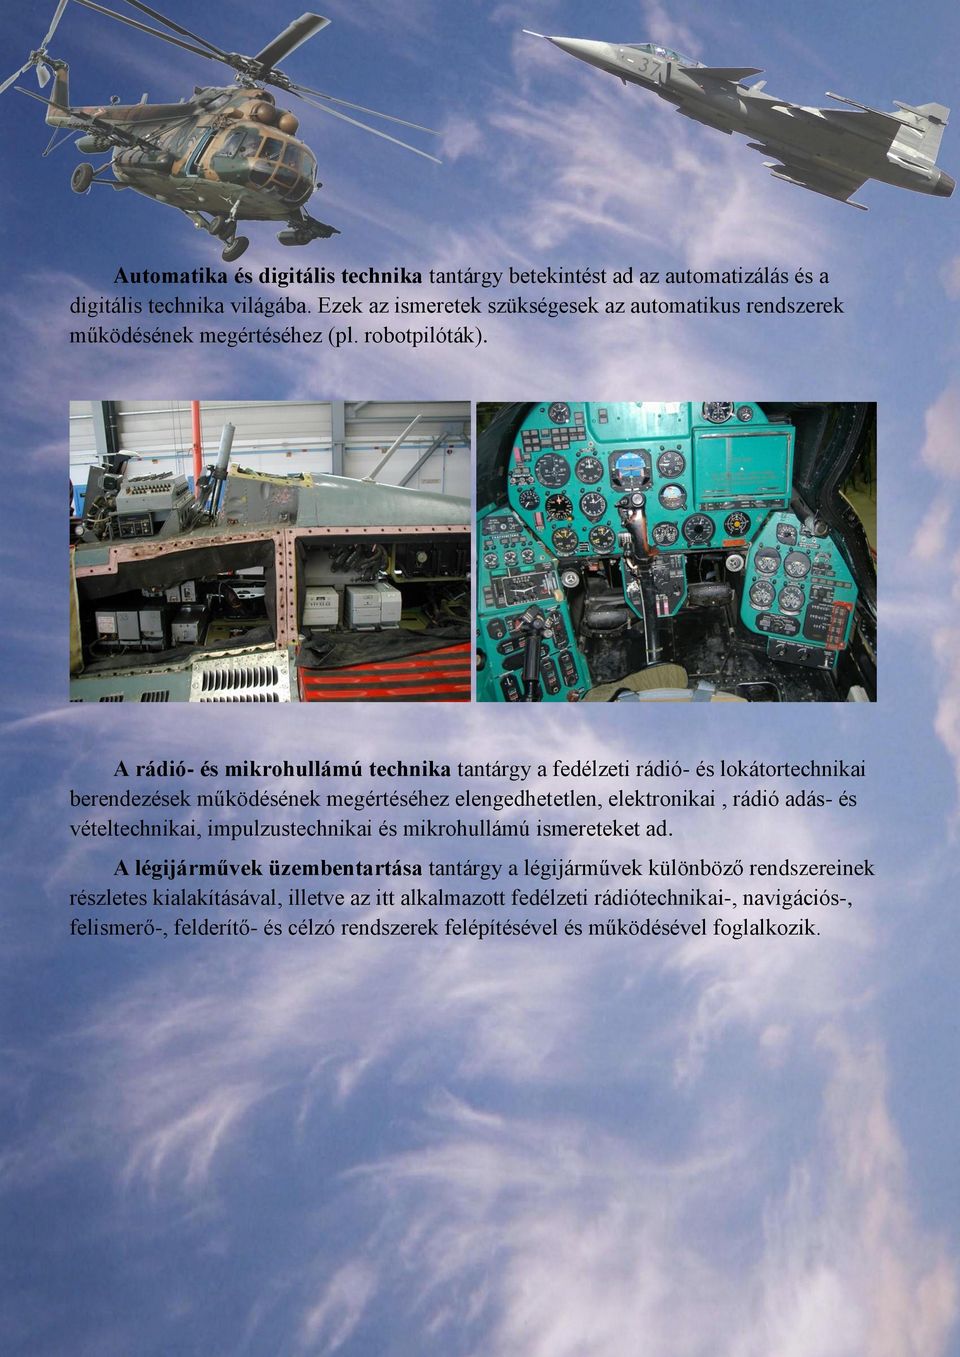 A rádió- és mikrohullámú technika tantárgy a fedélzeti rádió- és lokátortechnikai berendezések működésének megértéséhez elengedhetetlen, elektronikai, rádió adás- és